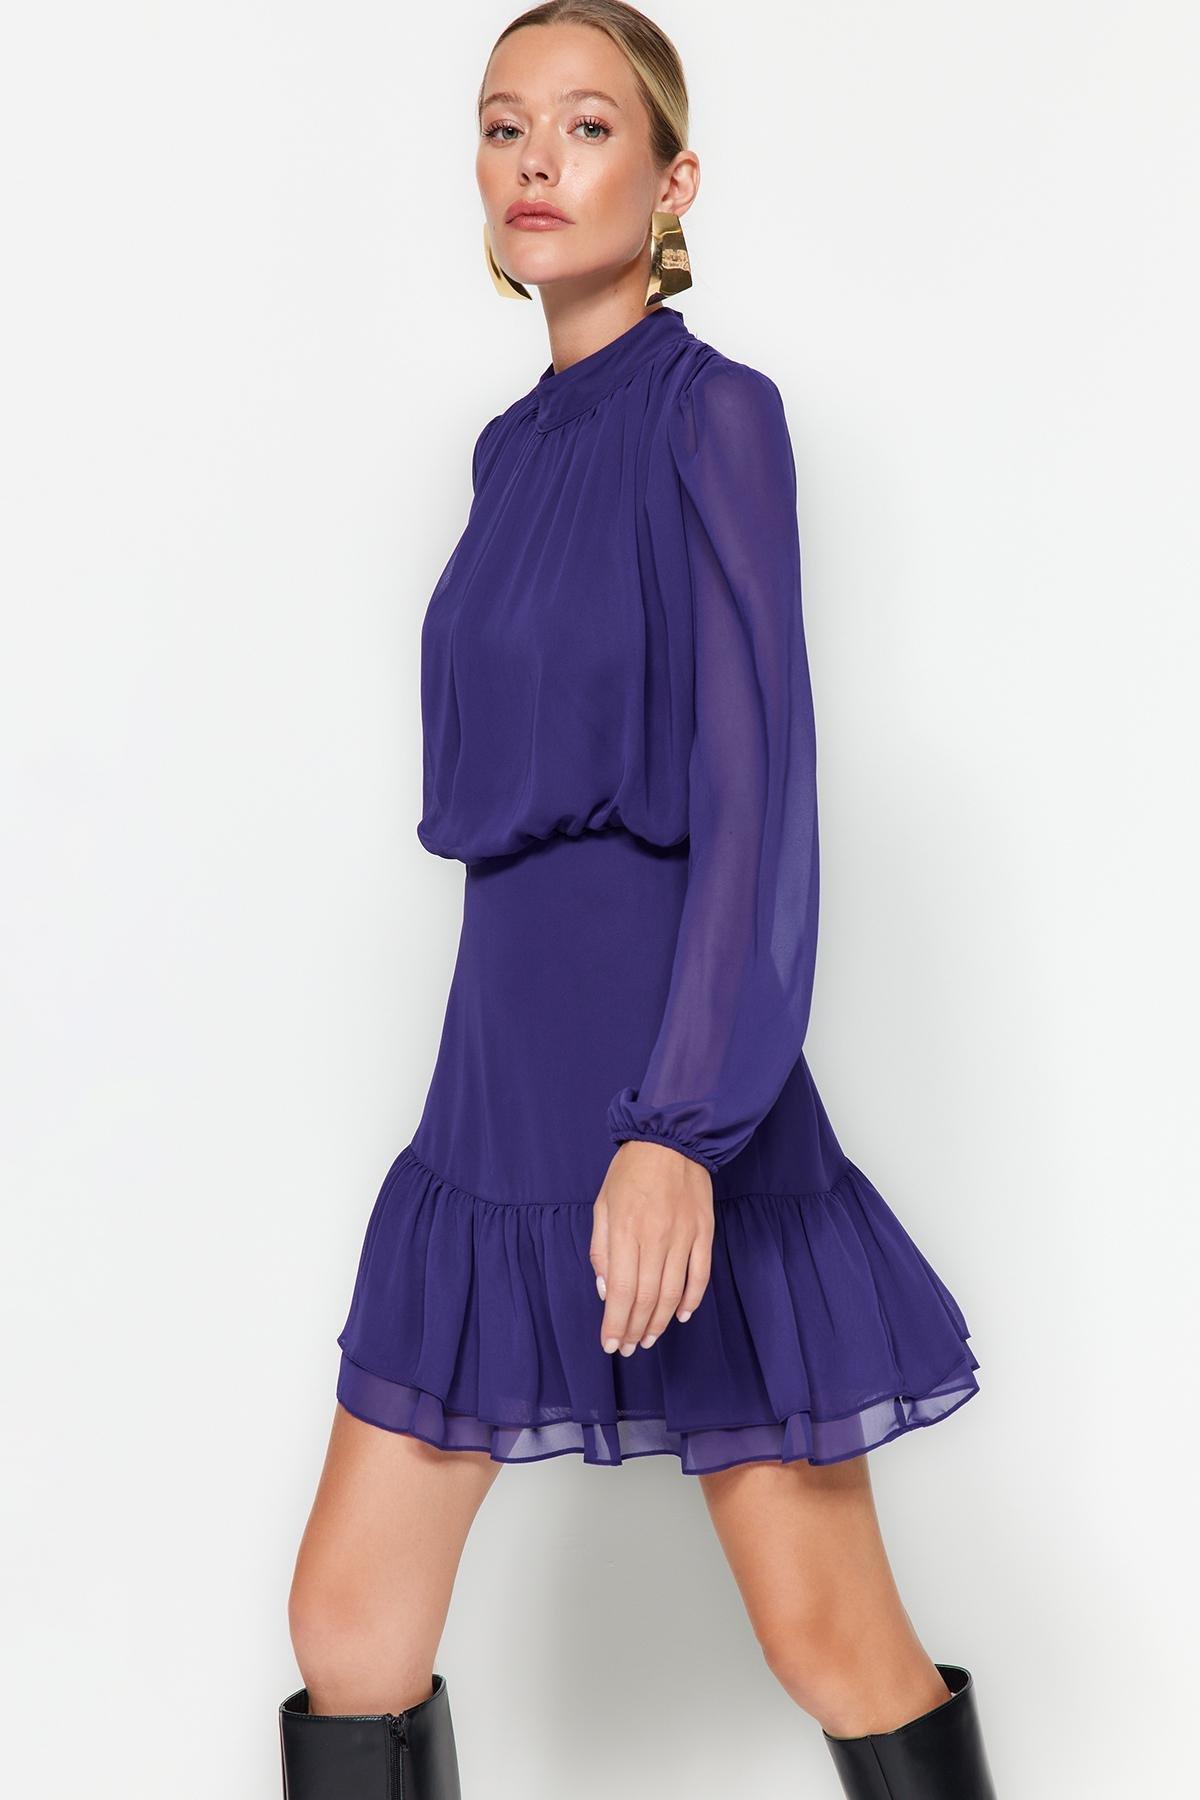 Trendyol - Purple Knitted Dress